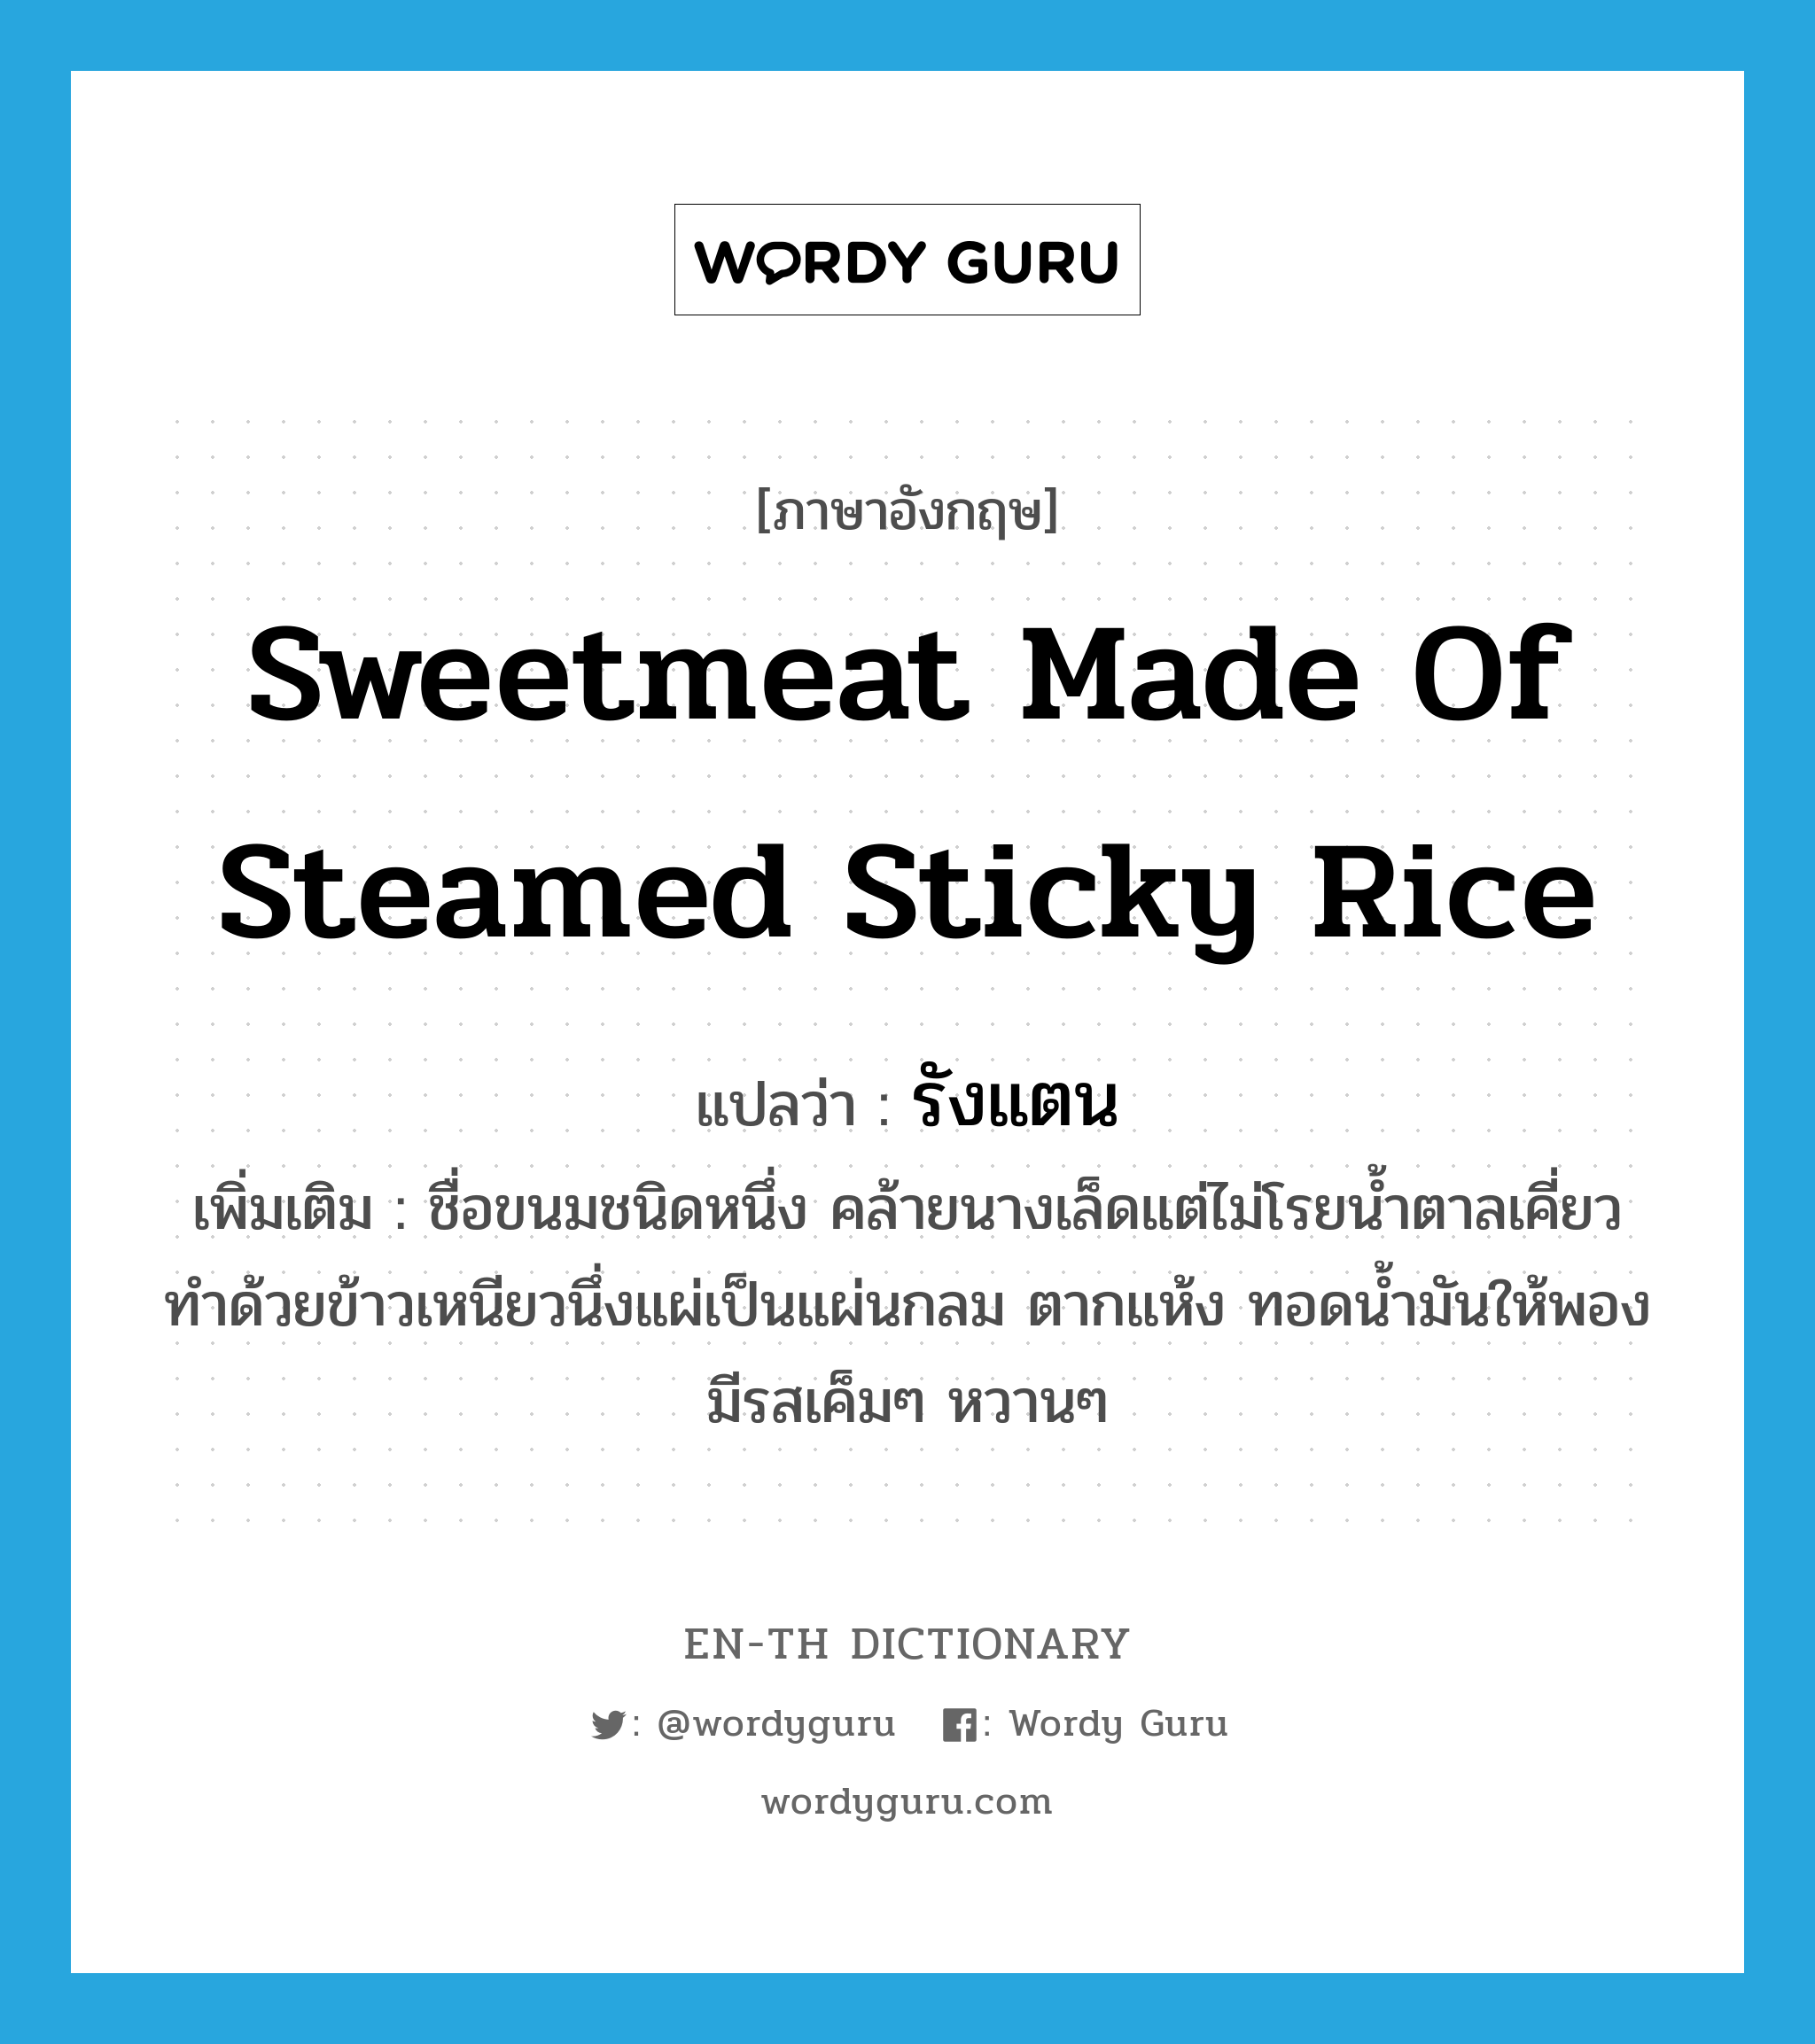 รังแตน ภาษาอังกฤษ?, คำศัพท์ภาษาอังกฤษ รังแตน แปลว่า sweetmeat made of steamed sticky rice ประเภท N เพิ่มเติม ชื่อขนมชนิดหนึ่ง คล้ายนางเล็ดแต่ไม่โรยน้ำตาลเคี่ยว ทำด้วยข้าวเหนียวนึ่งแผ่เป็นแผ่นกลม ตากแห้ง ทอดน้ำมันให้พอง มีรสเค็มๆ หวานๆ หมวด N